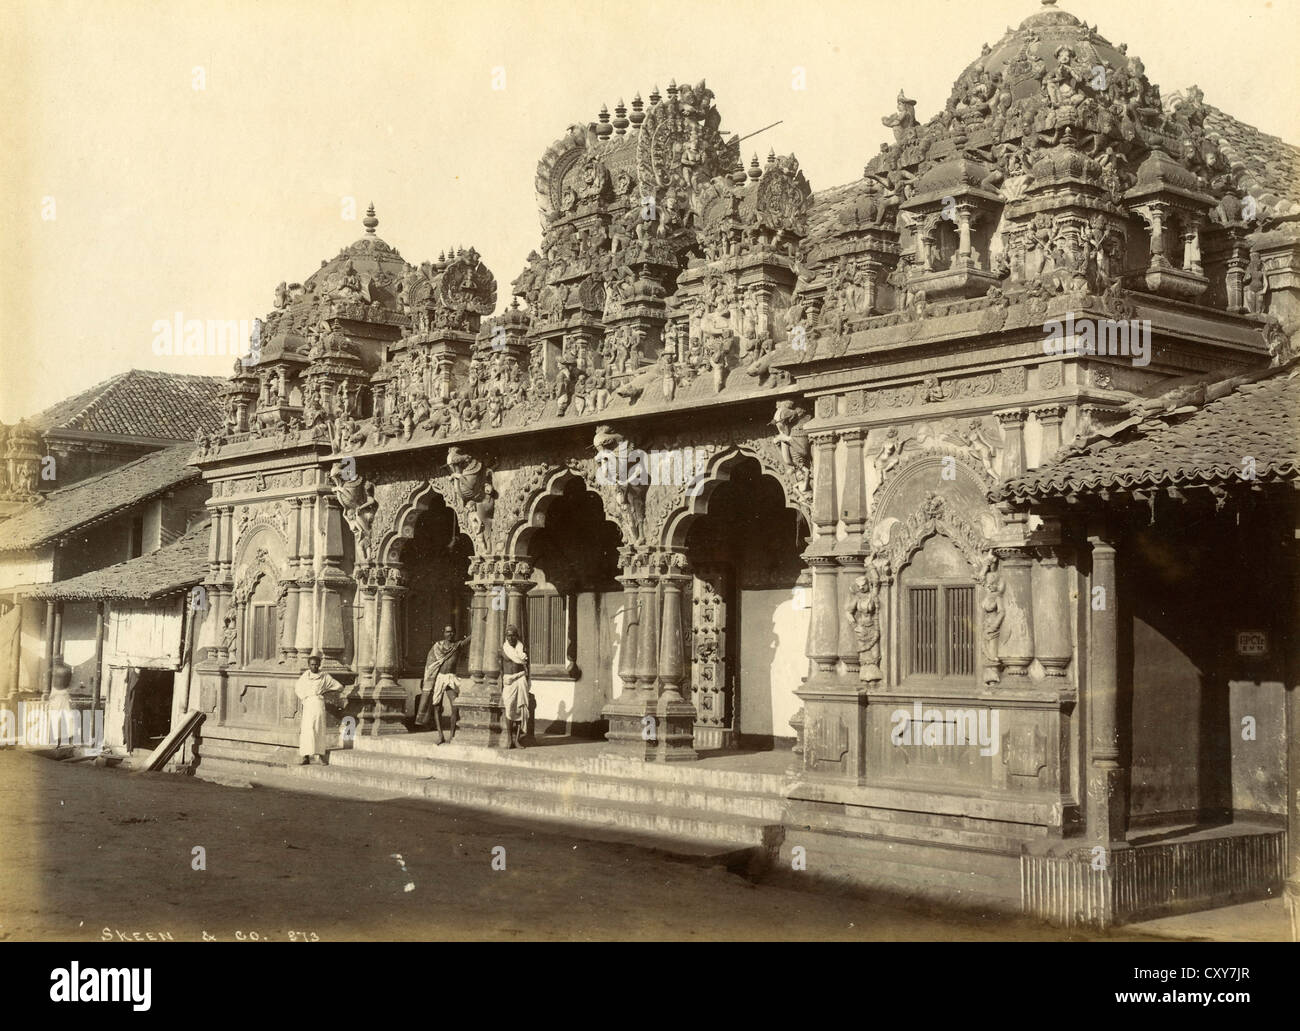 Шри ланка колония. Храмы в Коломбо Шри Ланка. Индуистские храмы в Коломбо. Цейлон в 19 веке. Шри Ланка 1948.